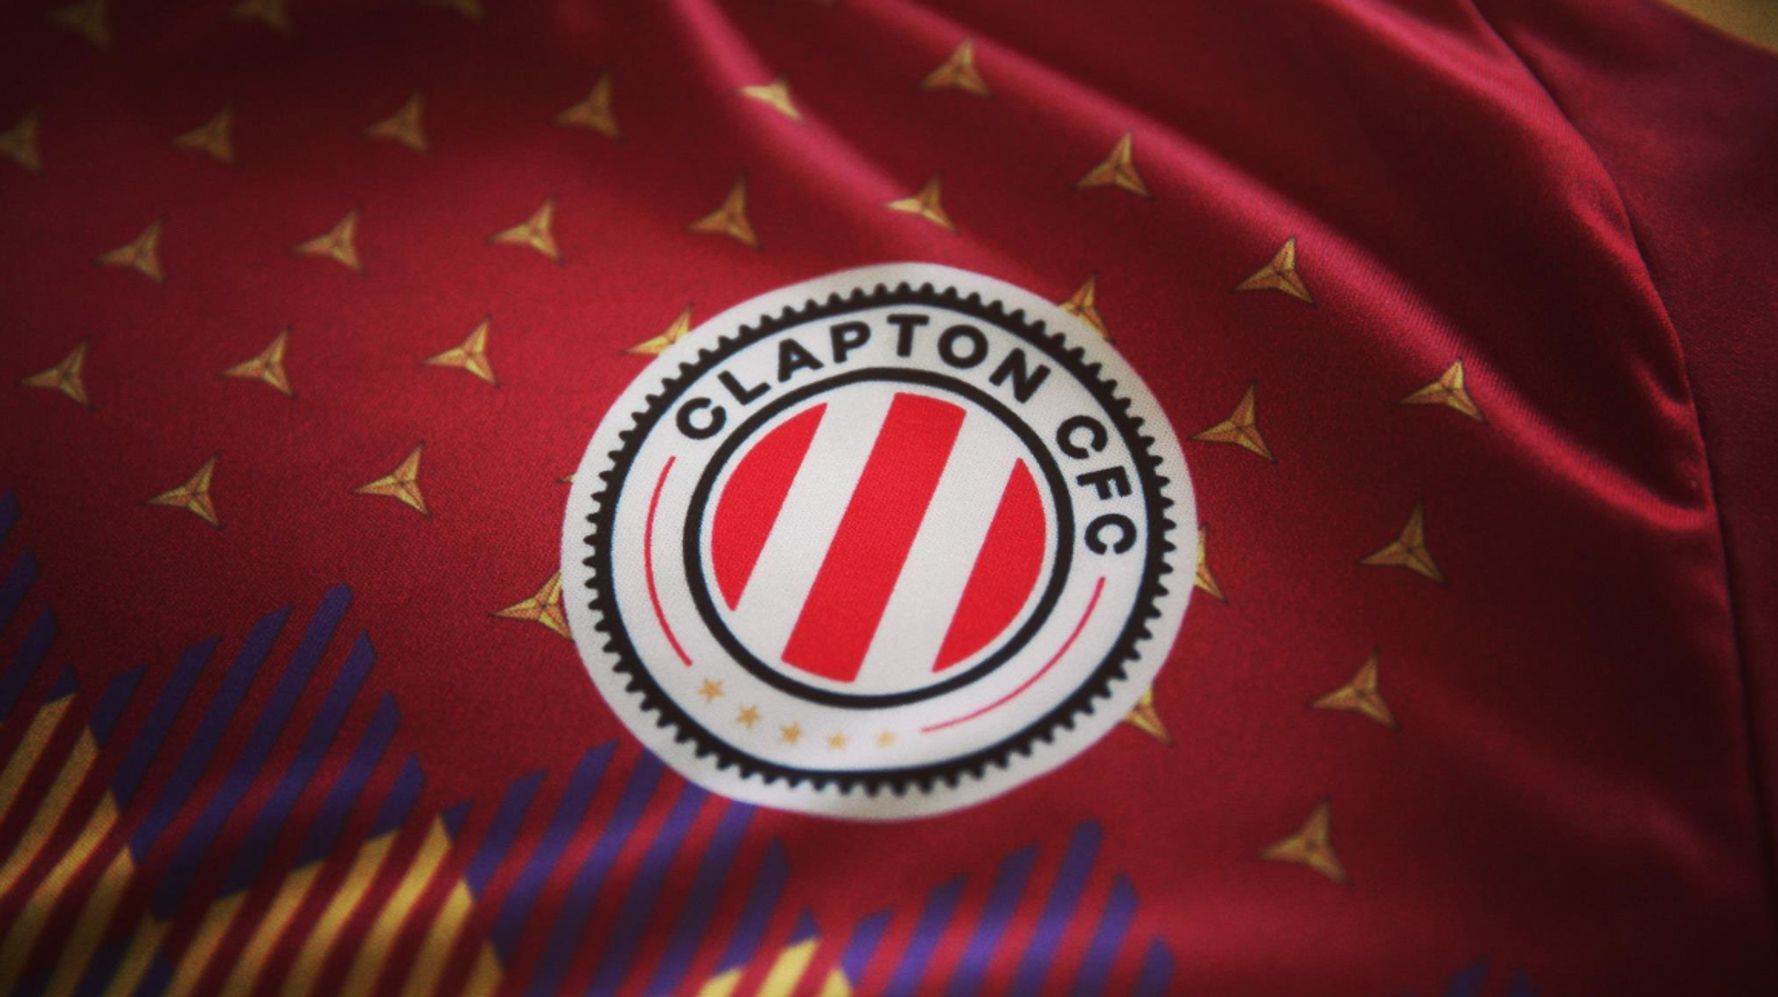 Clapton, el equipo de fútbol inglés que juega con camiseta homenaje a la República El HuffPost Noticias